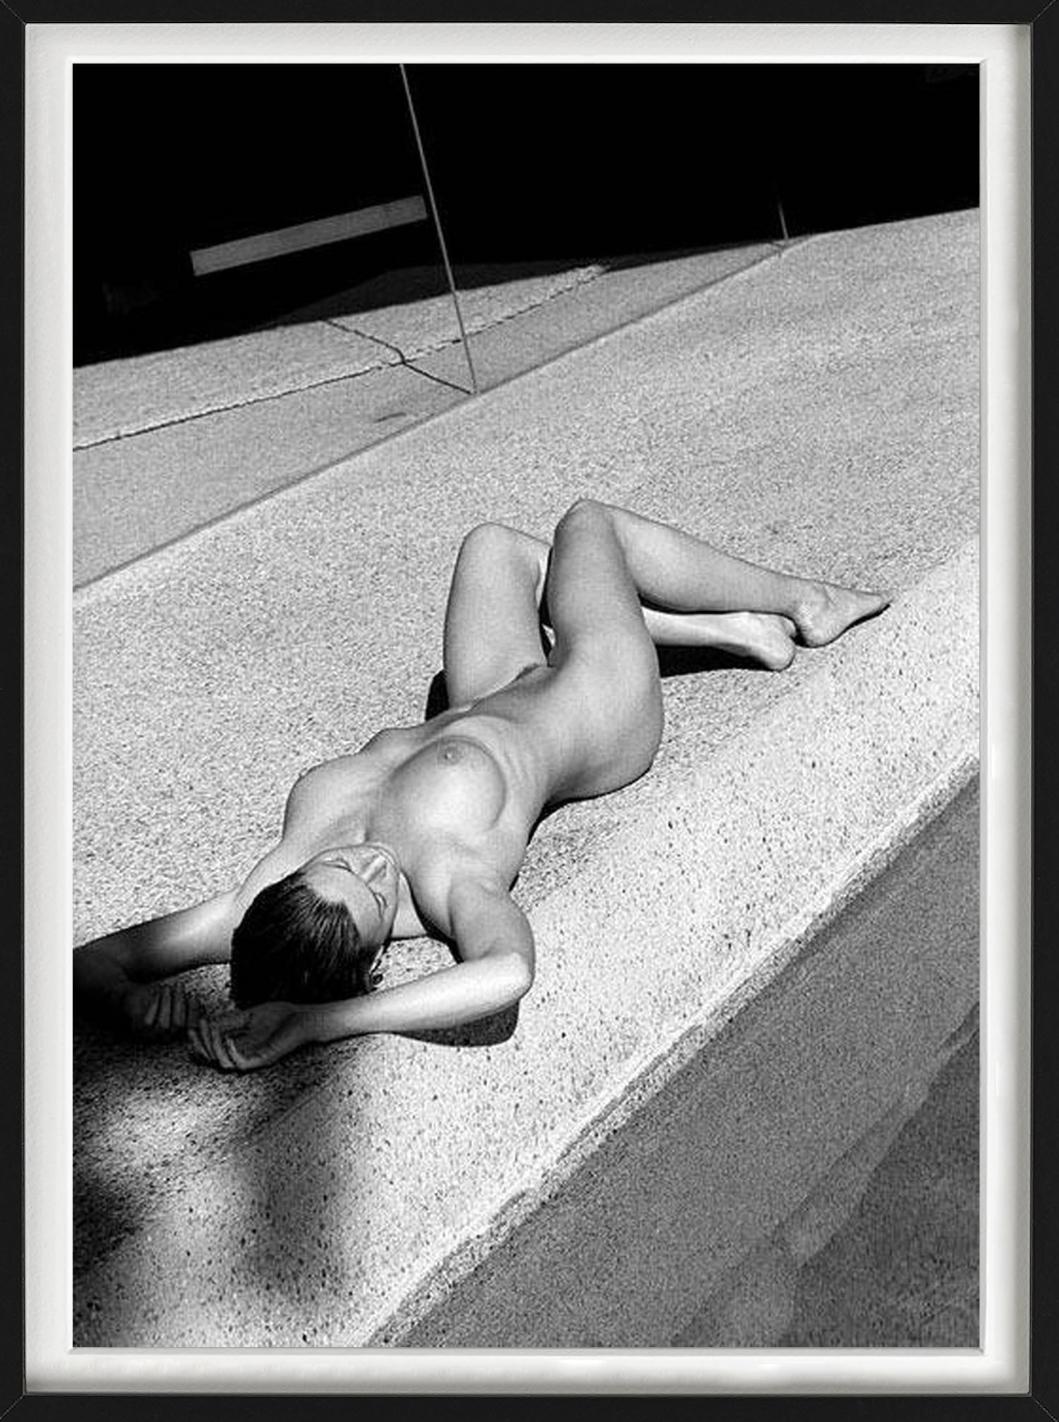 Carre Otis IV - Akt am POOL im Sonnenlicht, Kunstfotografie, 2001 (Schwarz), Nude Photograph, von Antoine Verglas